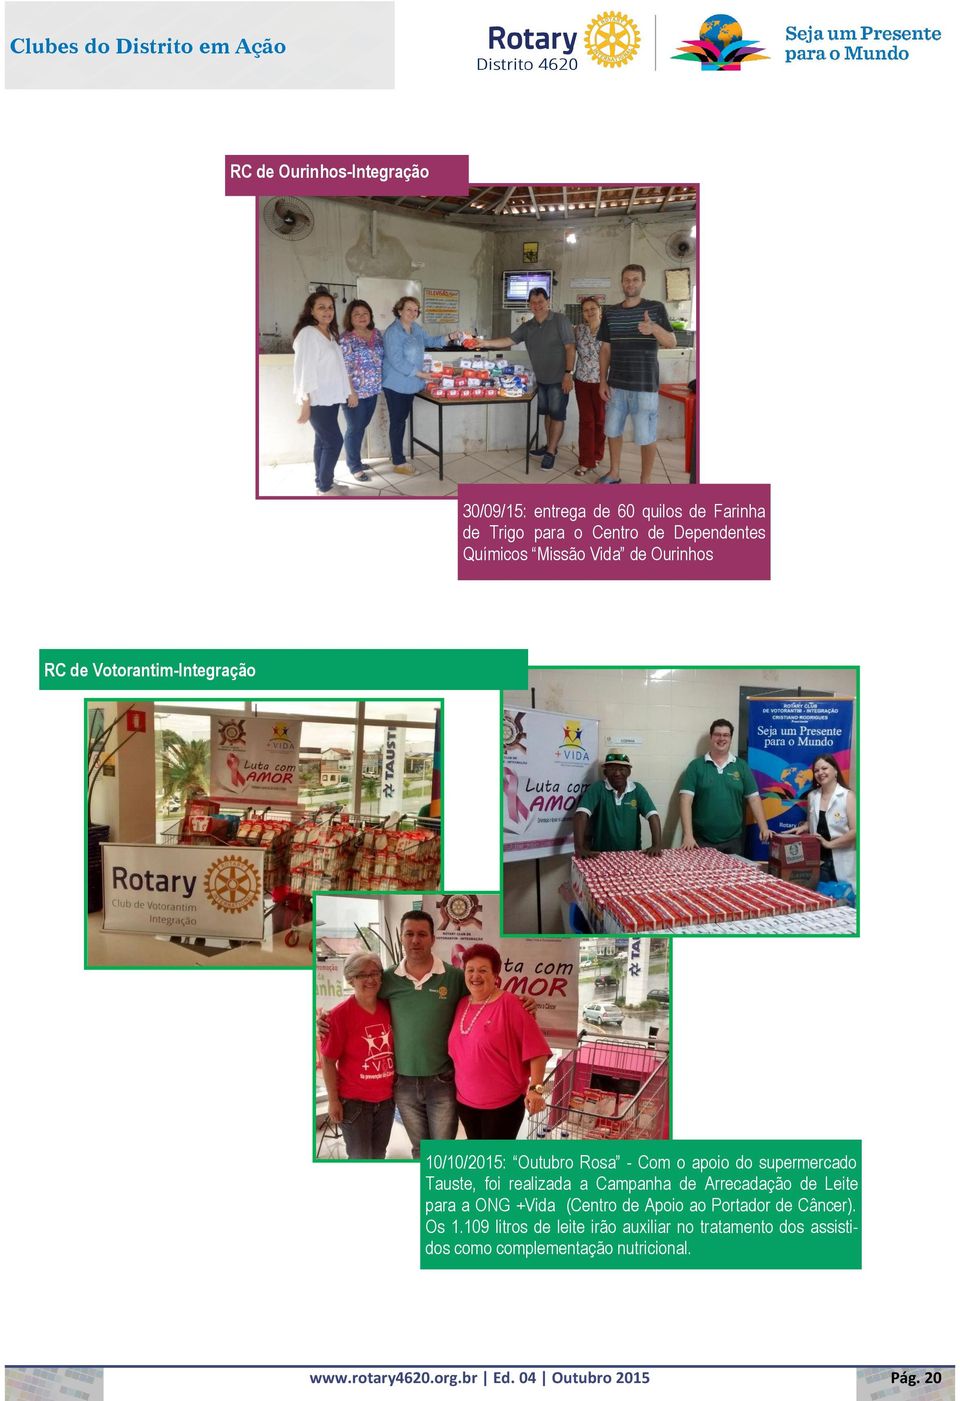 supermercado Tauste, foi realizada a Campanha de Arrecadação de Leite para a ONG +Vida (Centro de Apoio ao Portador